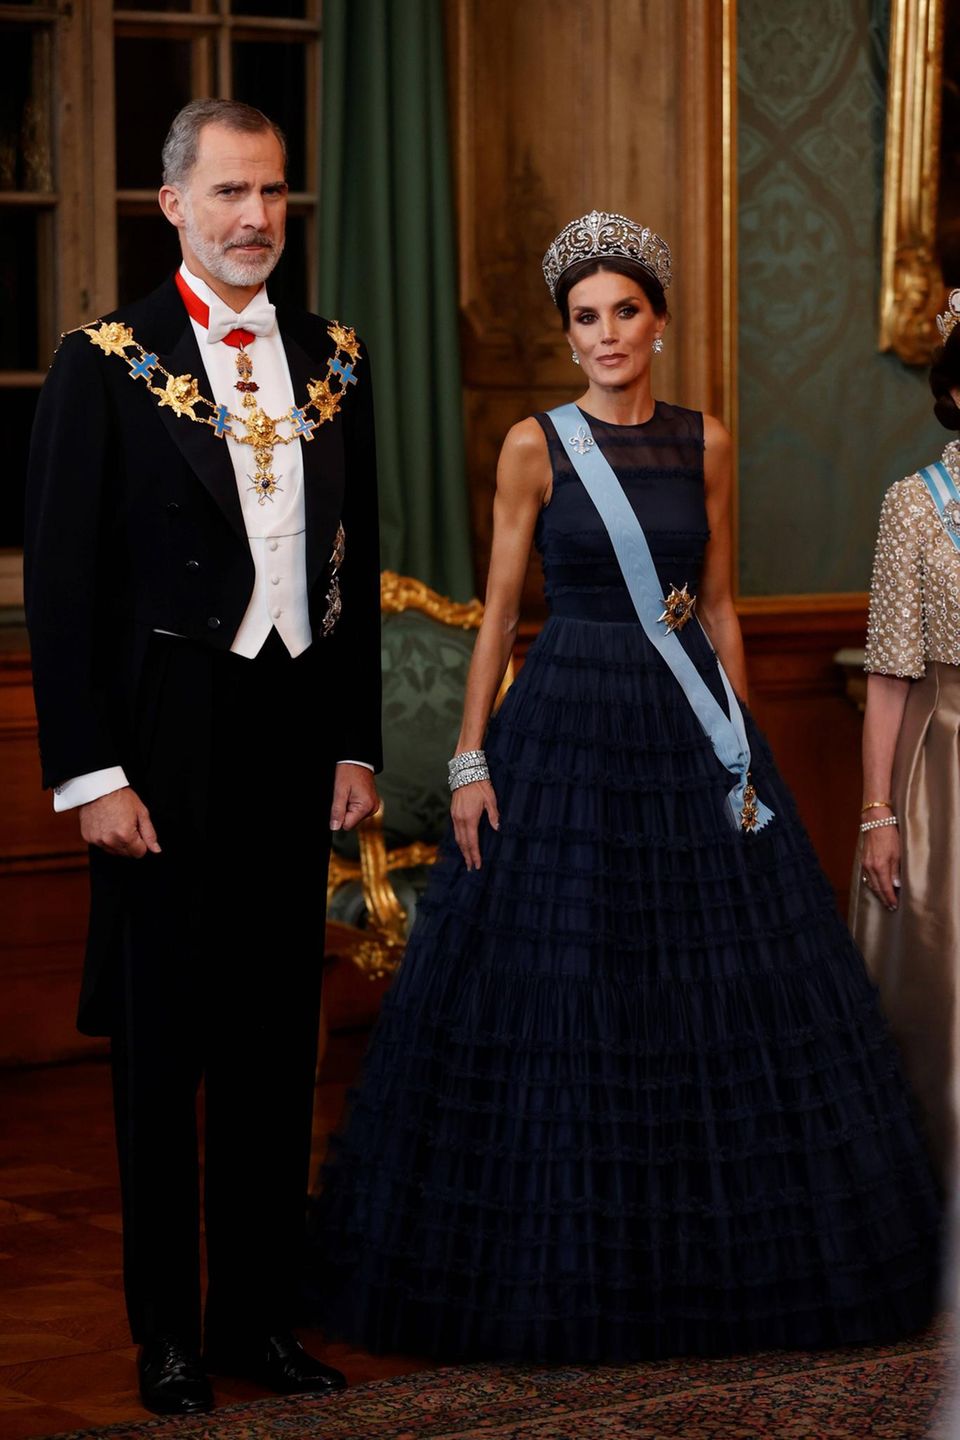 Diadem, Orden, große Robe: So stellt man sich eine Königin vor! Dabei trug Letizia 2021 in Stockholm ein Kleid von H&M. 